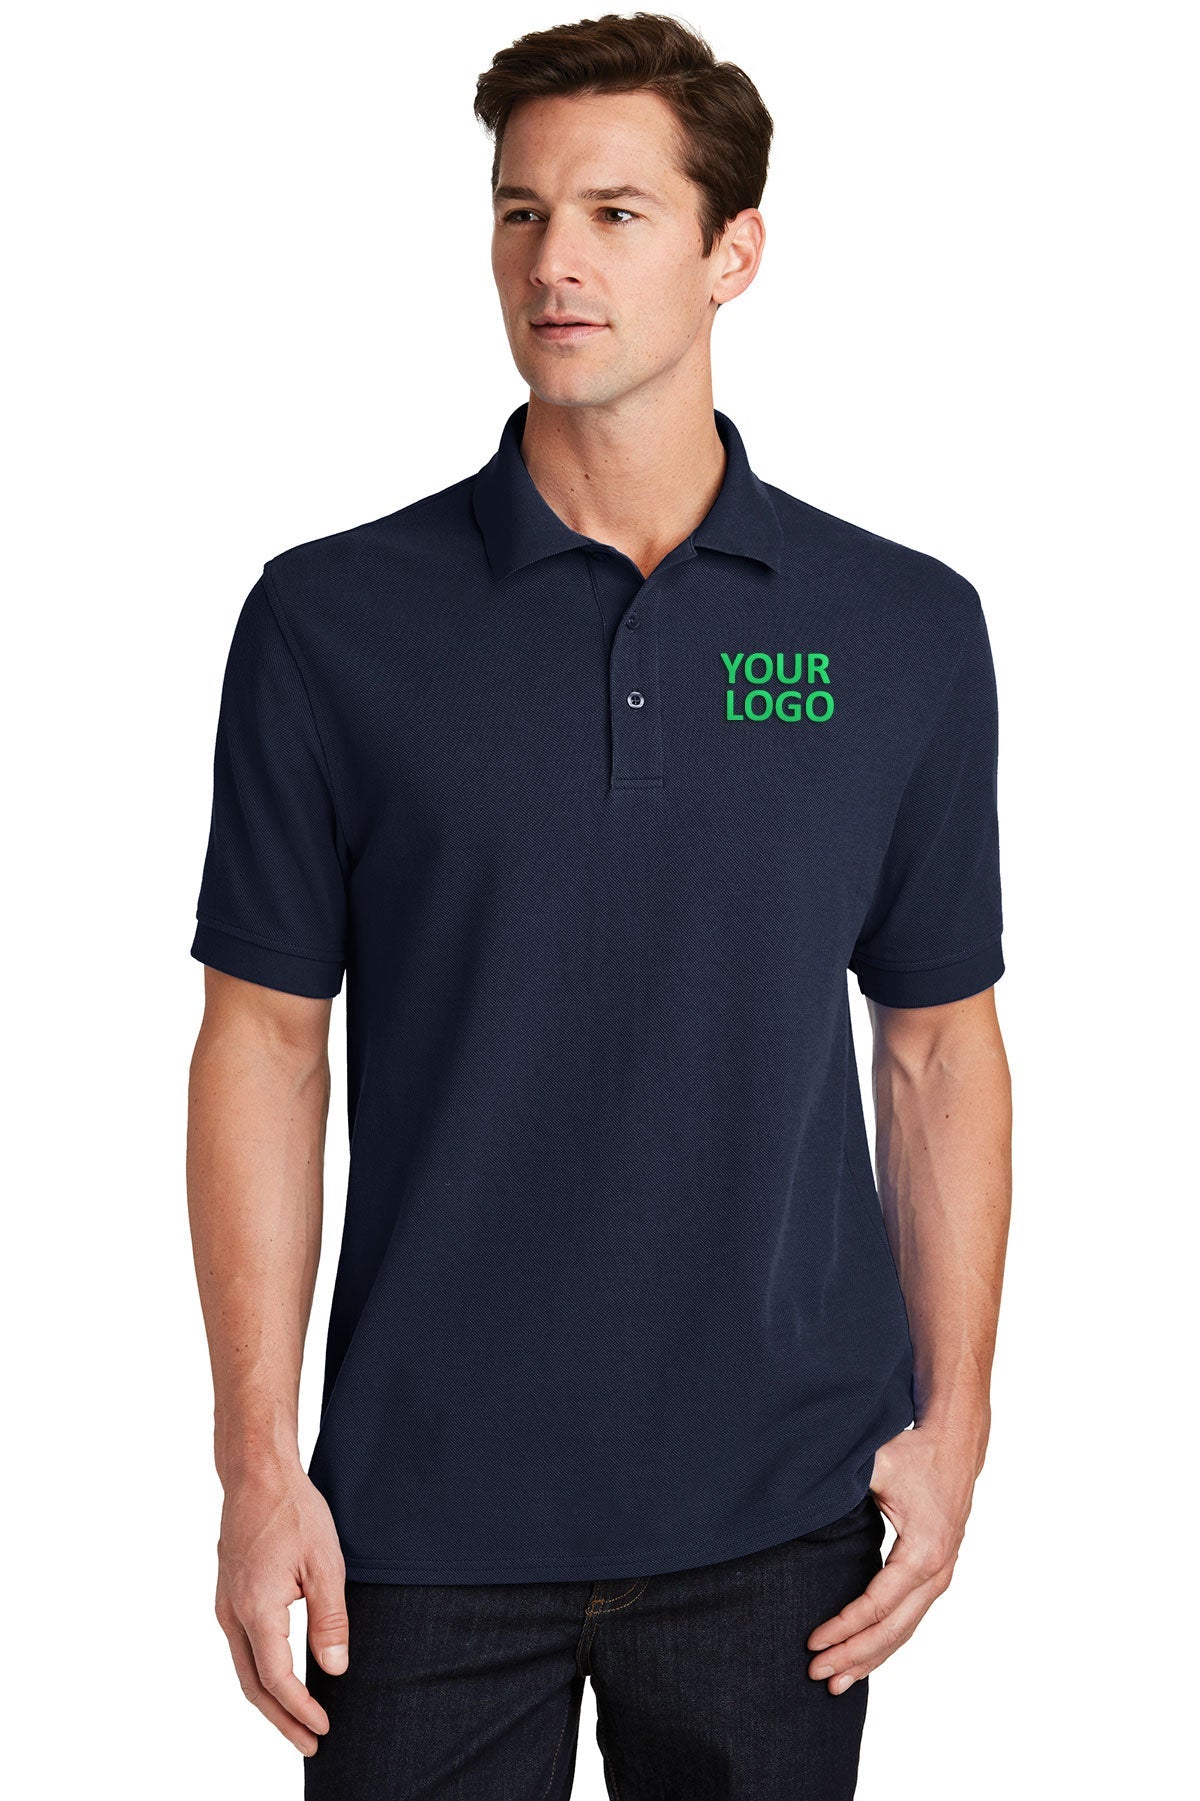 Port & Company Deep Navy KP1500 custom company polo shirts